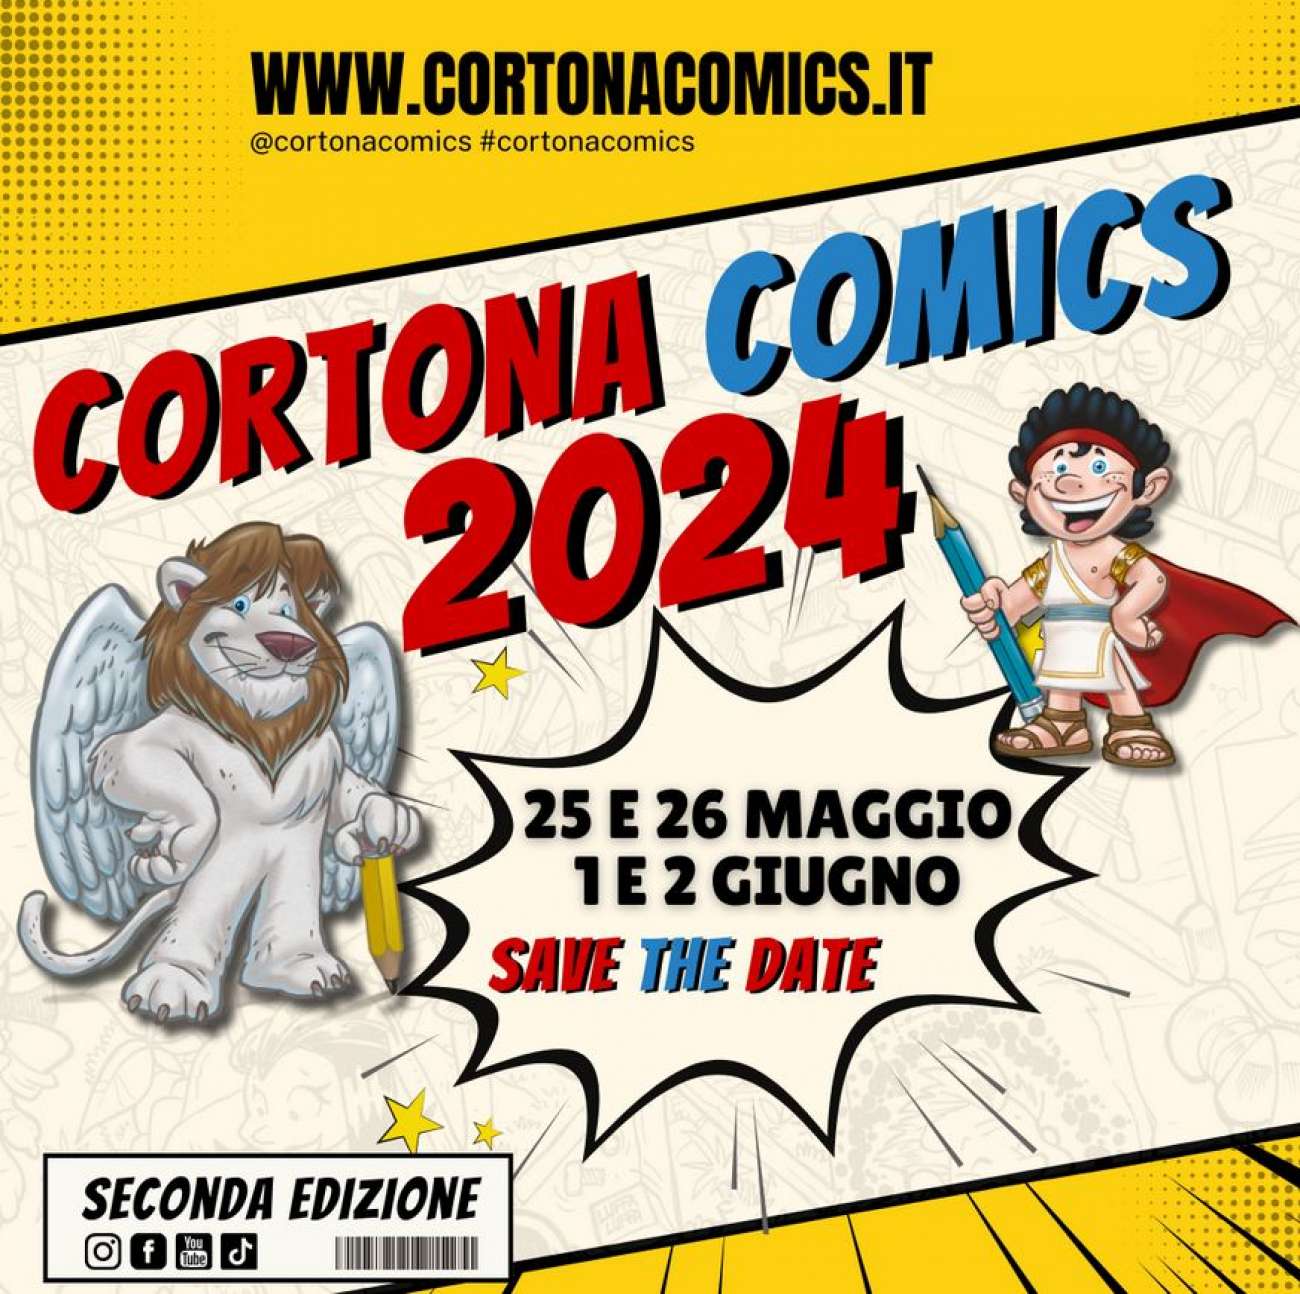 Seconda edizione del Cortona Comics